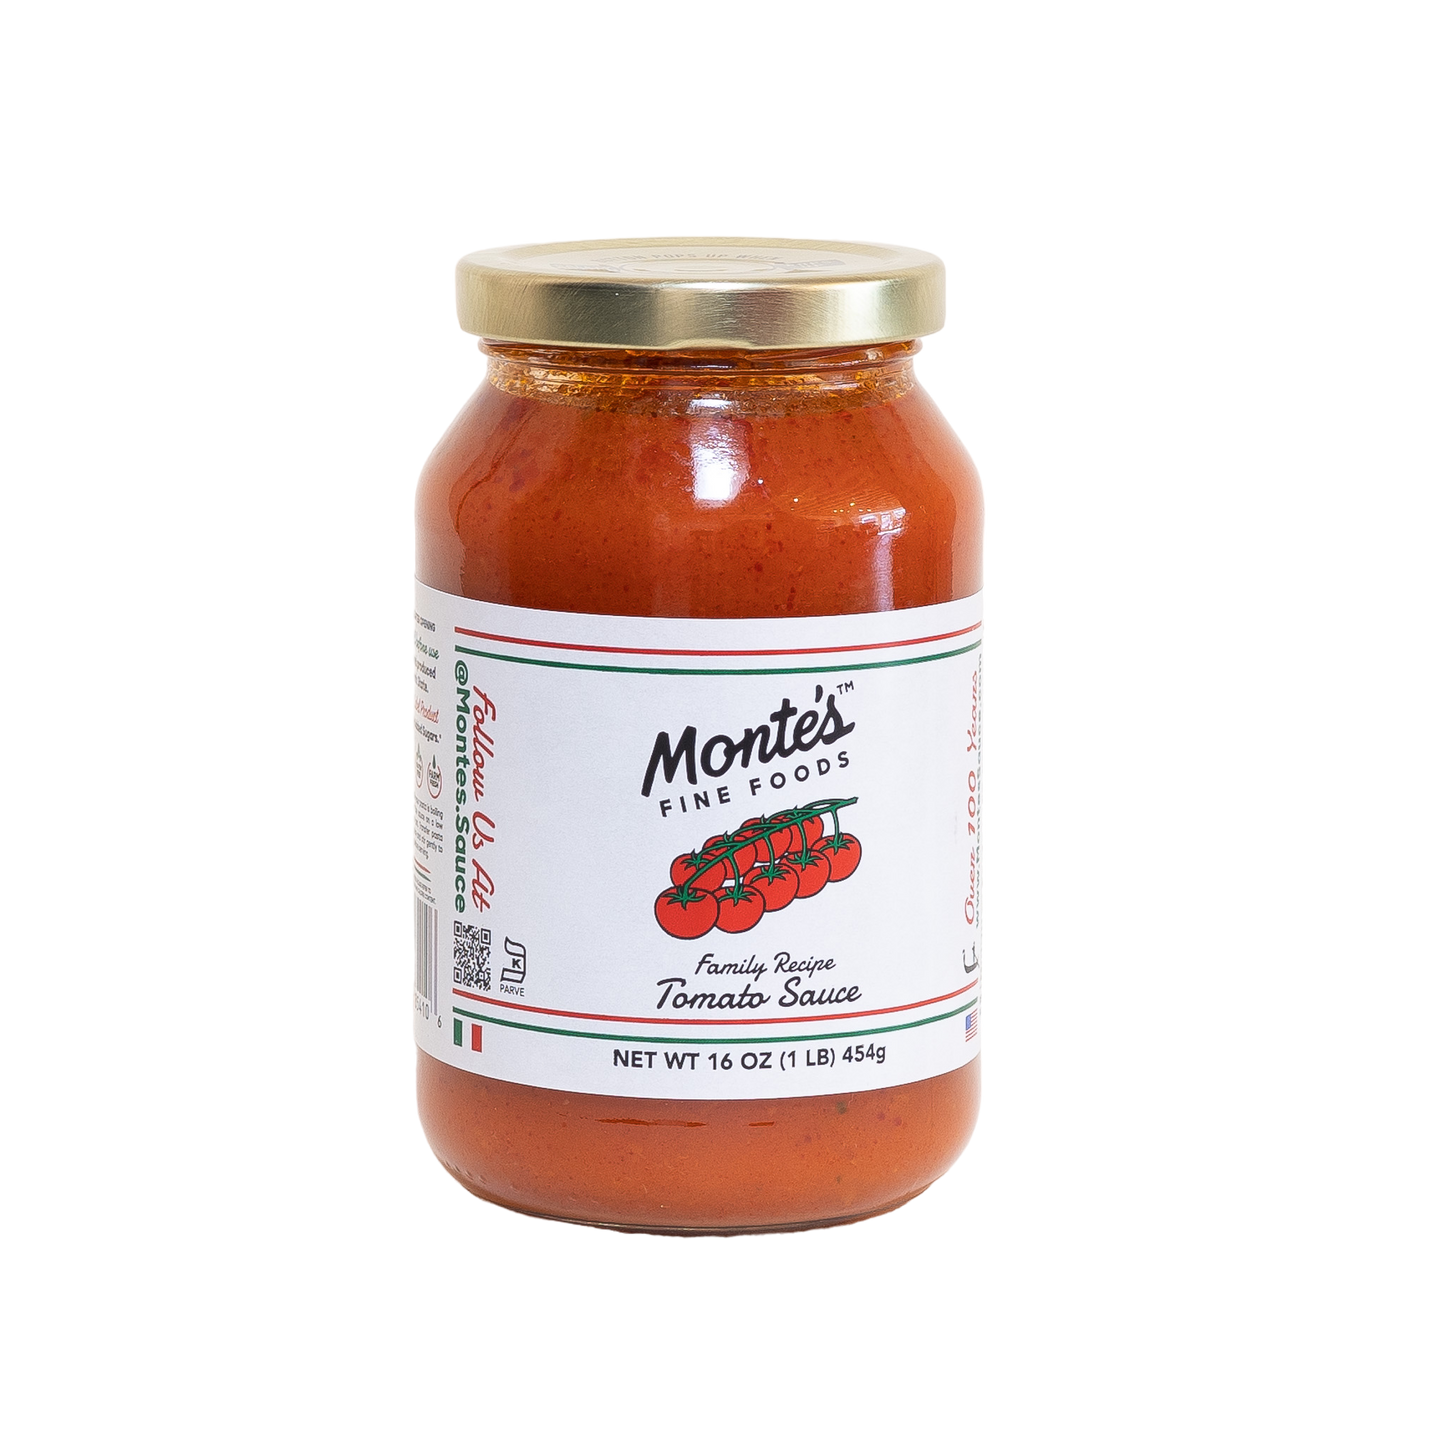 Monte's Original Family Recipe Tomato Sauce